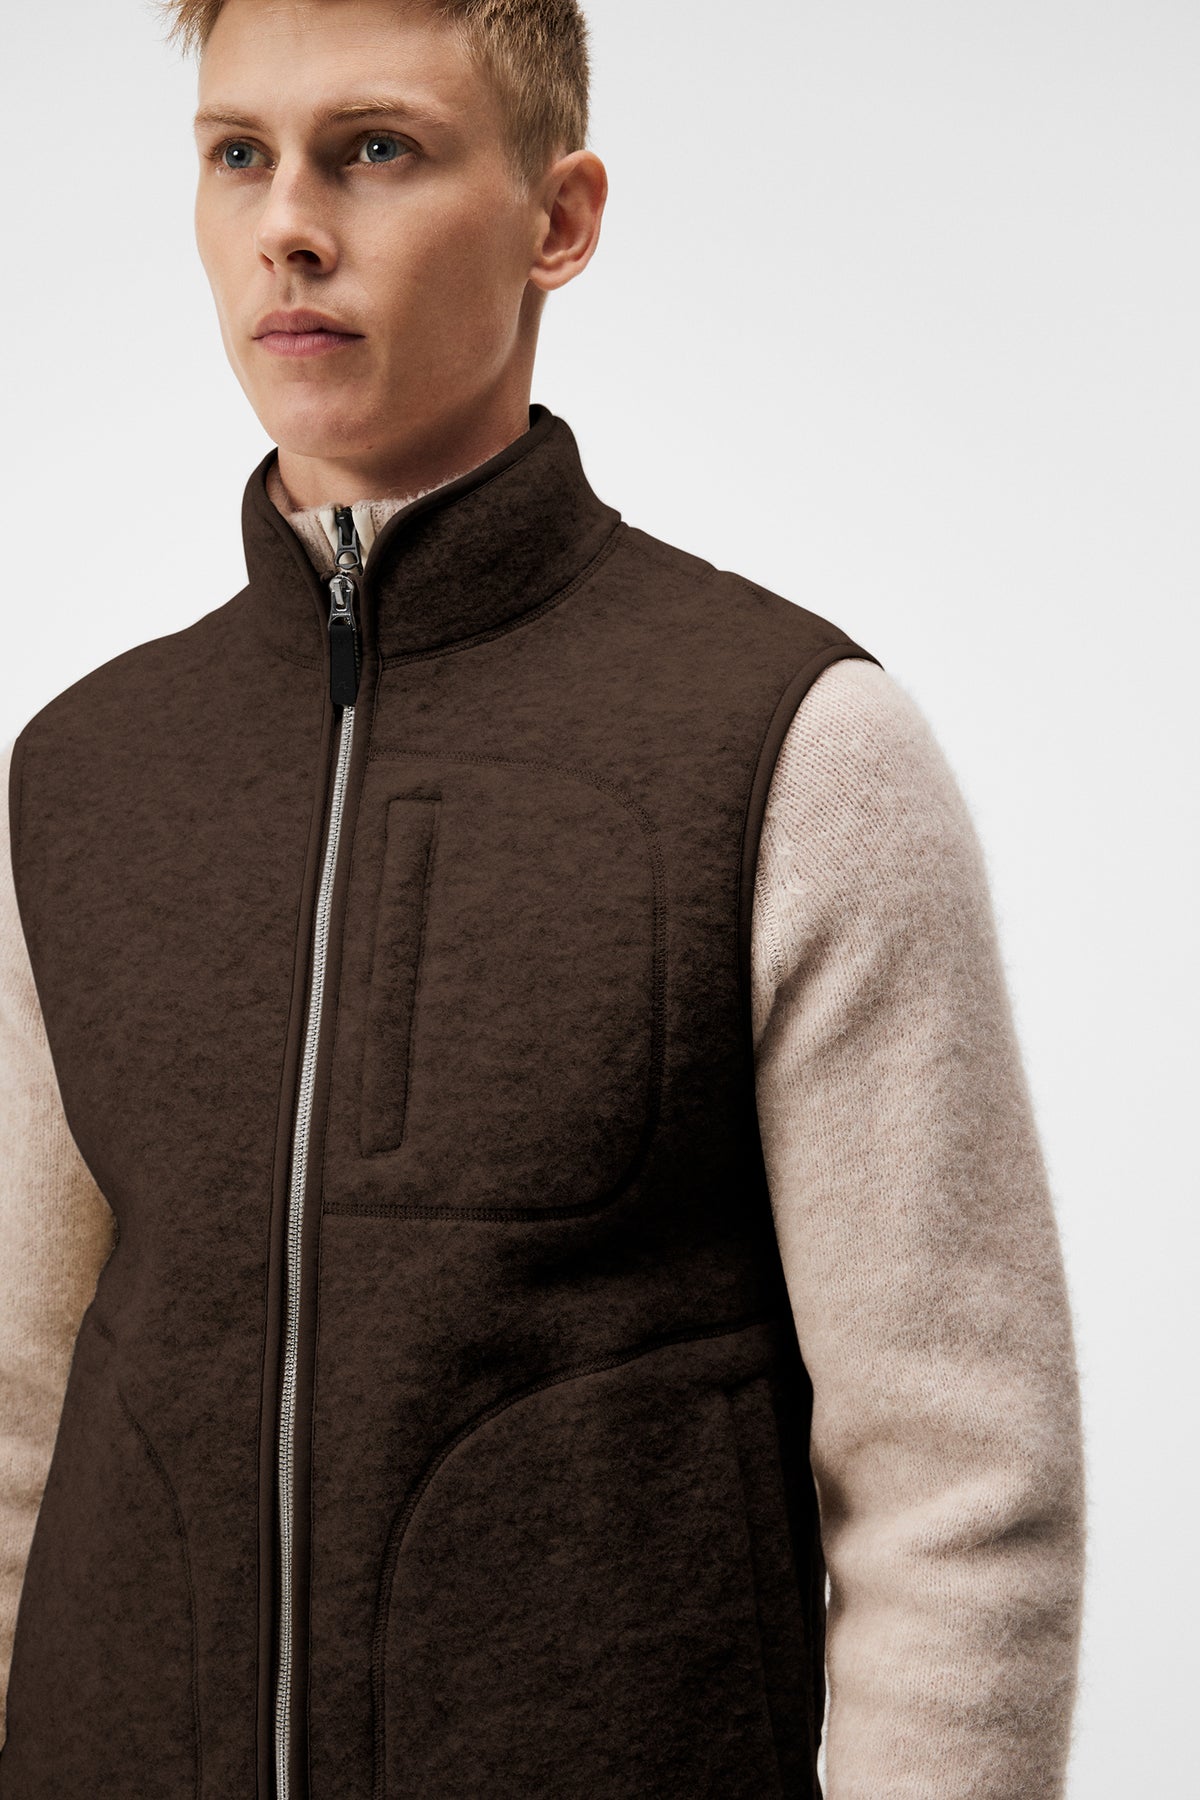 Duncan Wool Fleece Vest / Delicioso